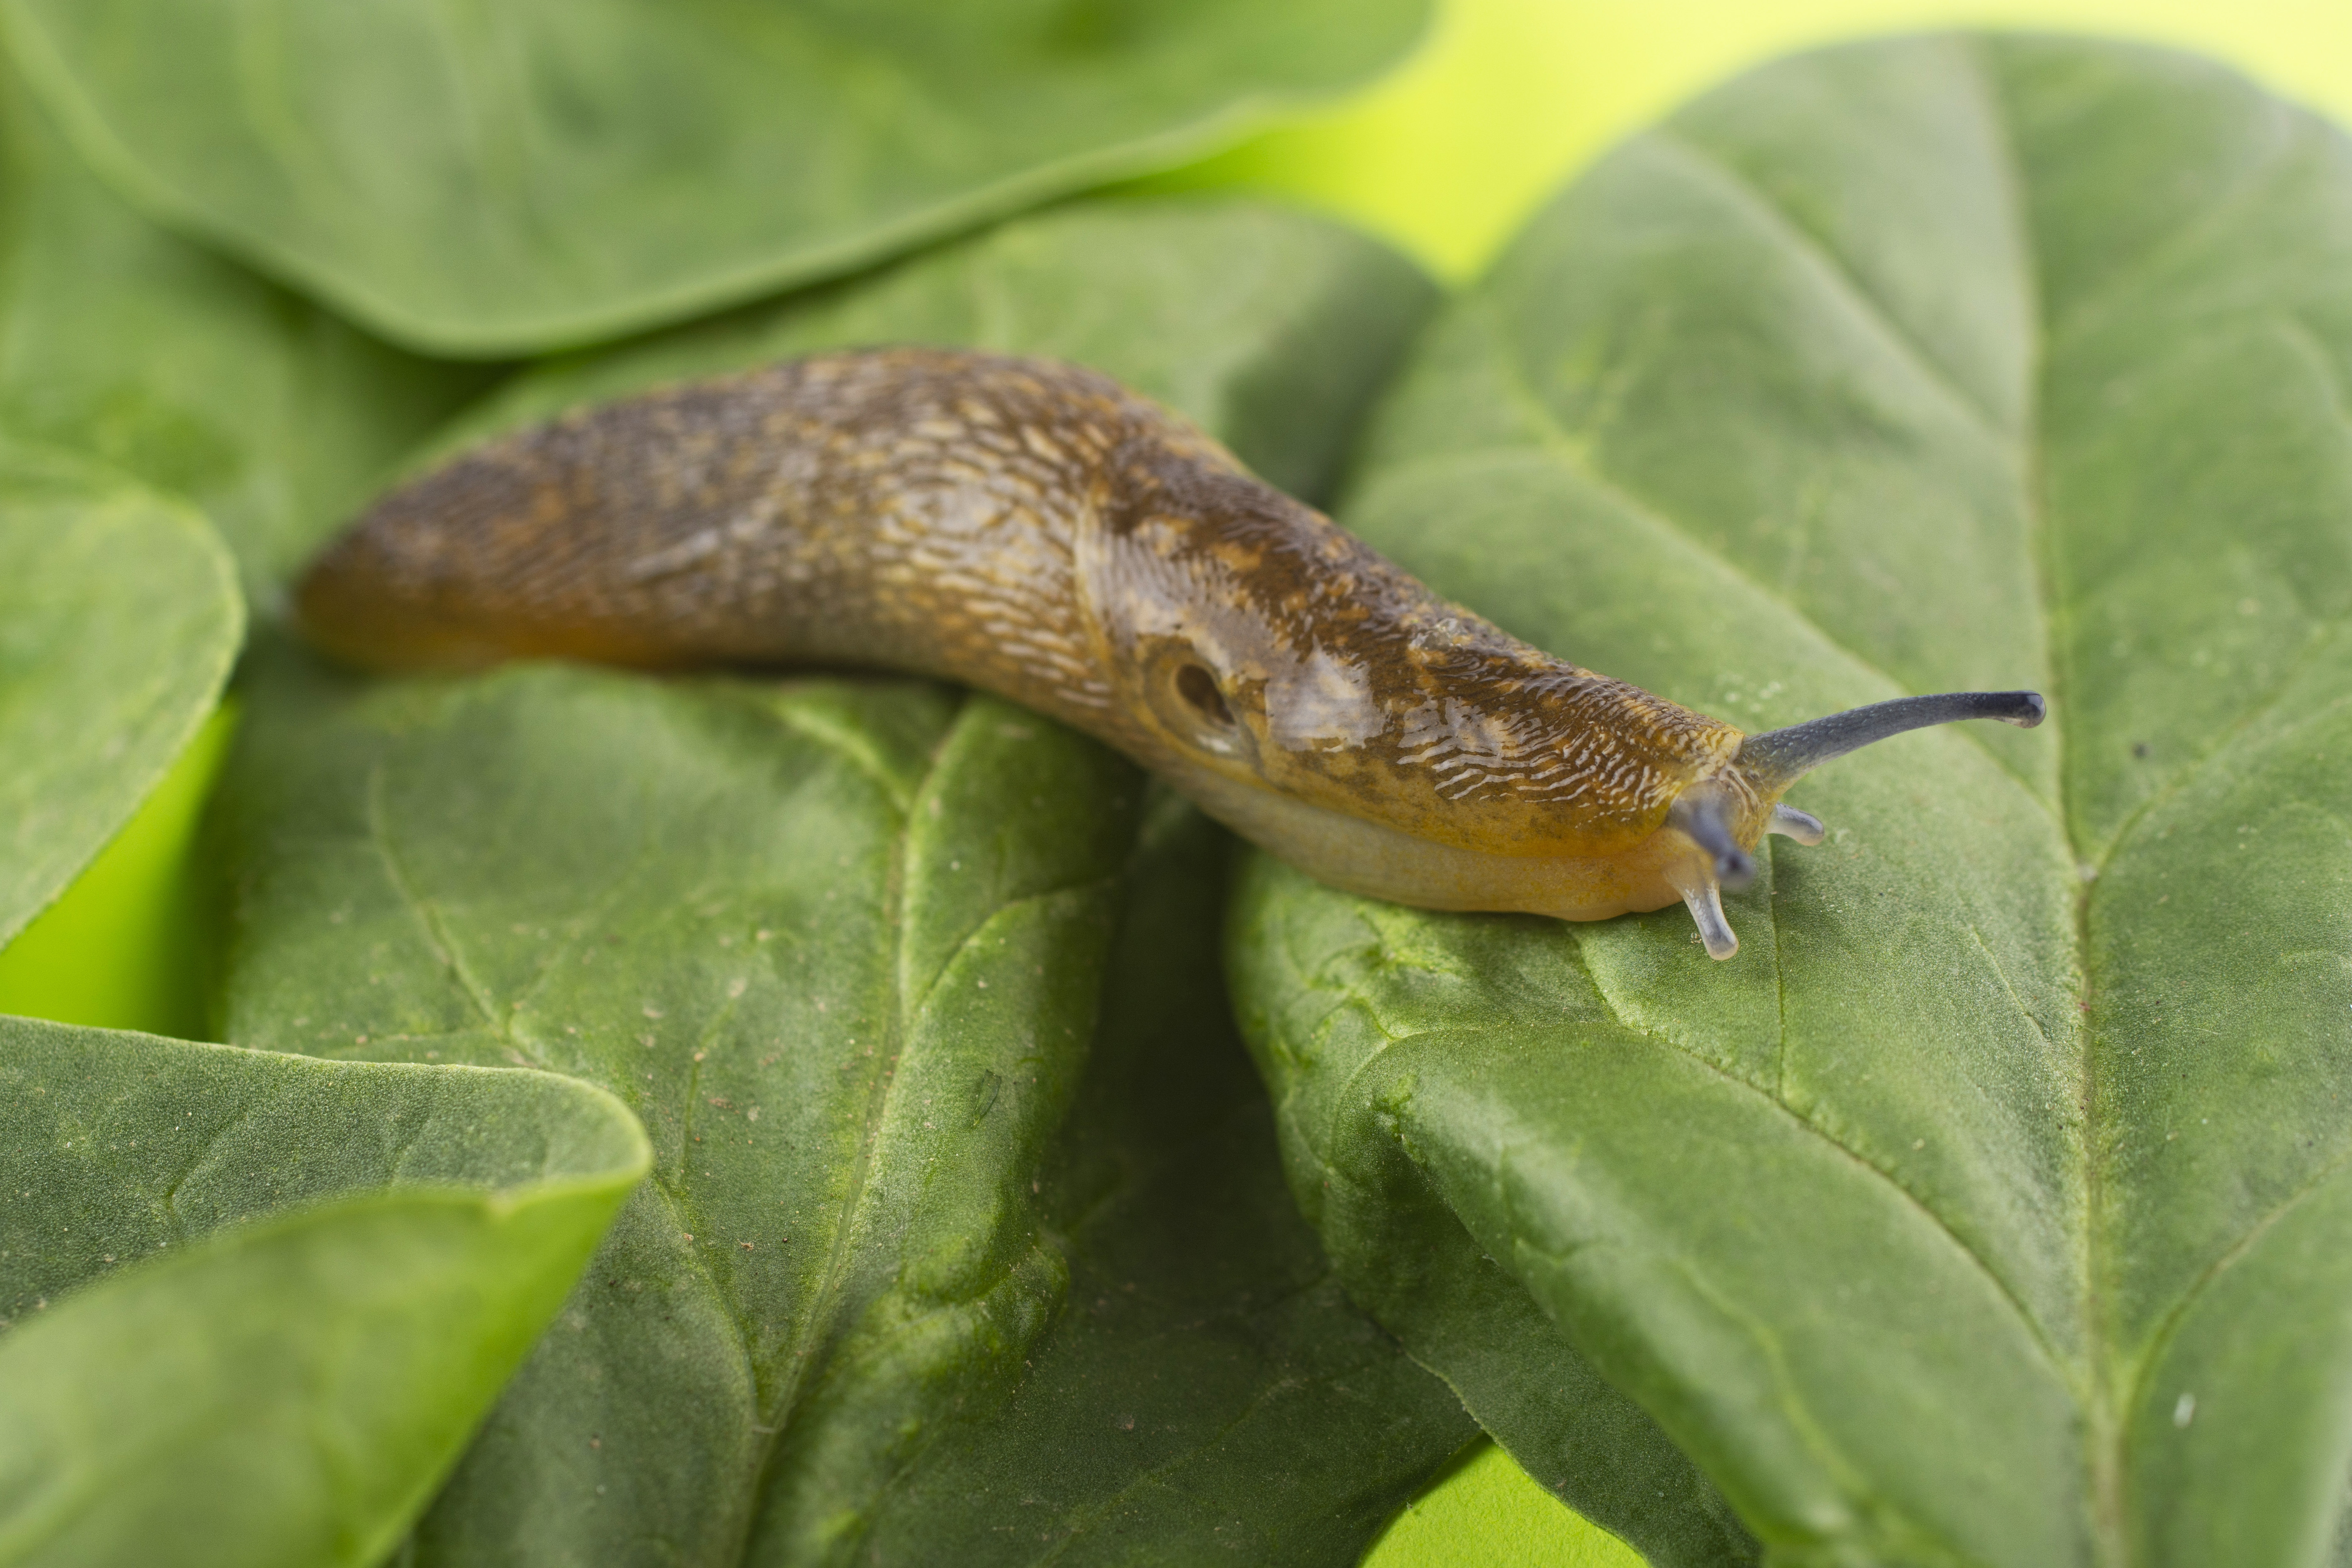 A slug on spinach leaves